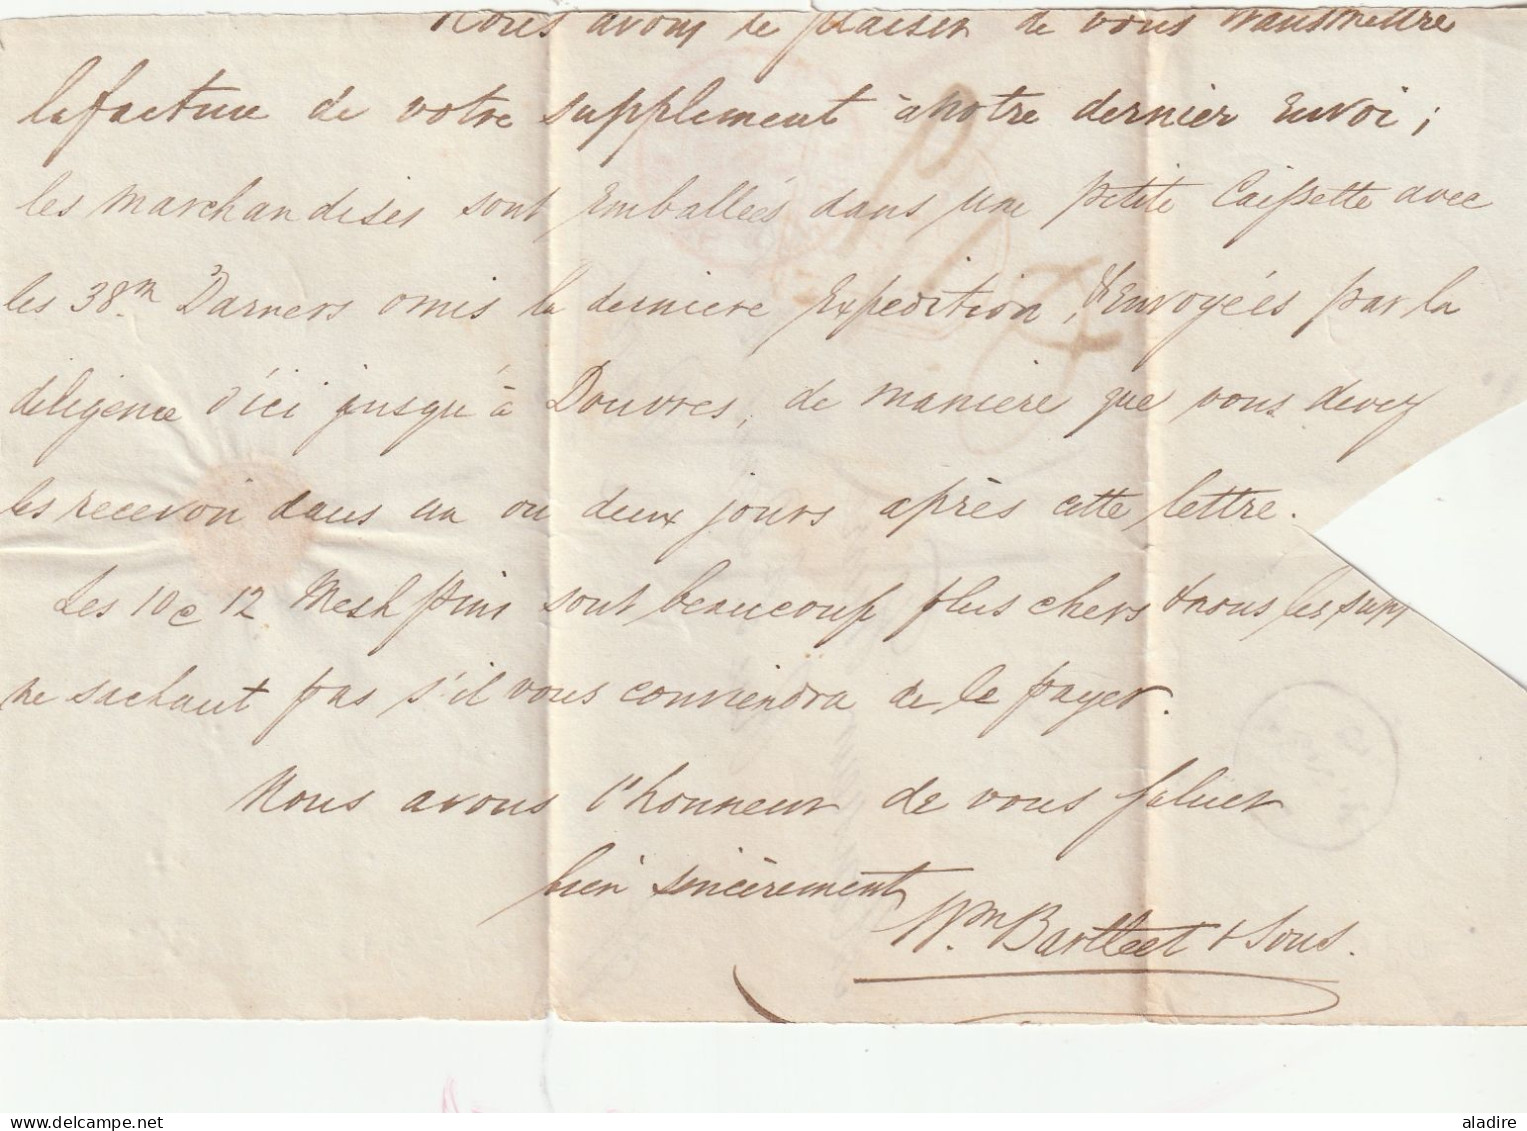 1834 - K WIV - portion de lettre pliée en français de Londres ? vers Paris - entrée par Calais - taxe 15